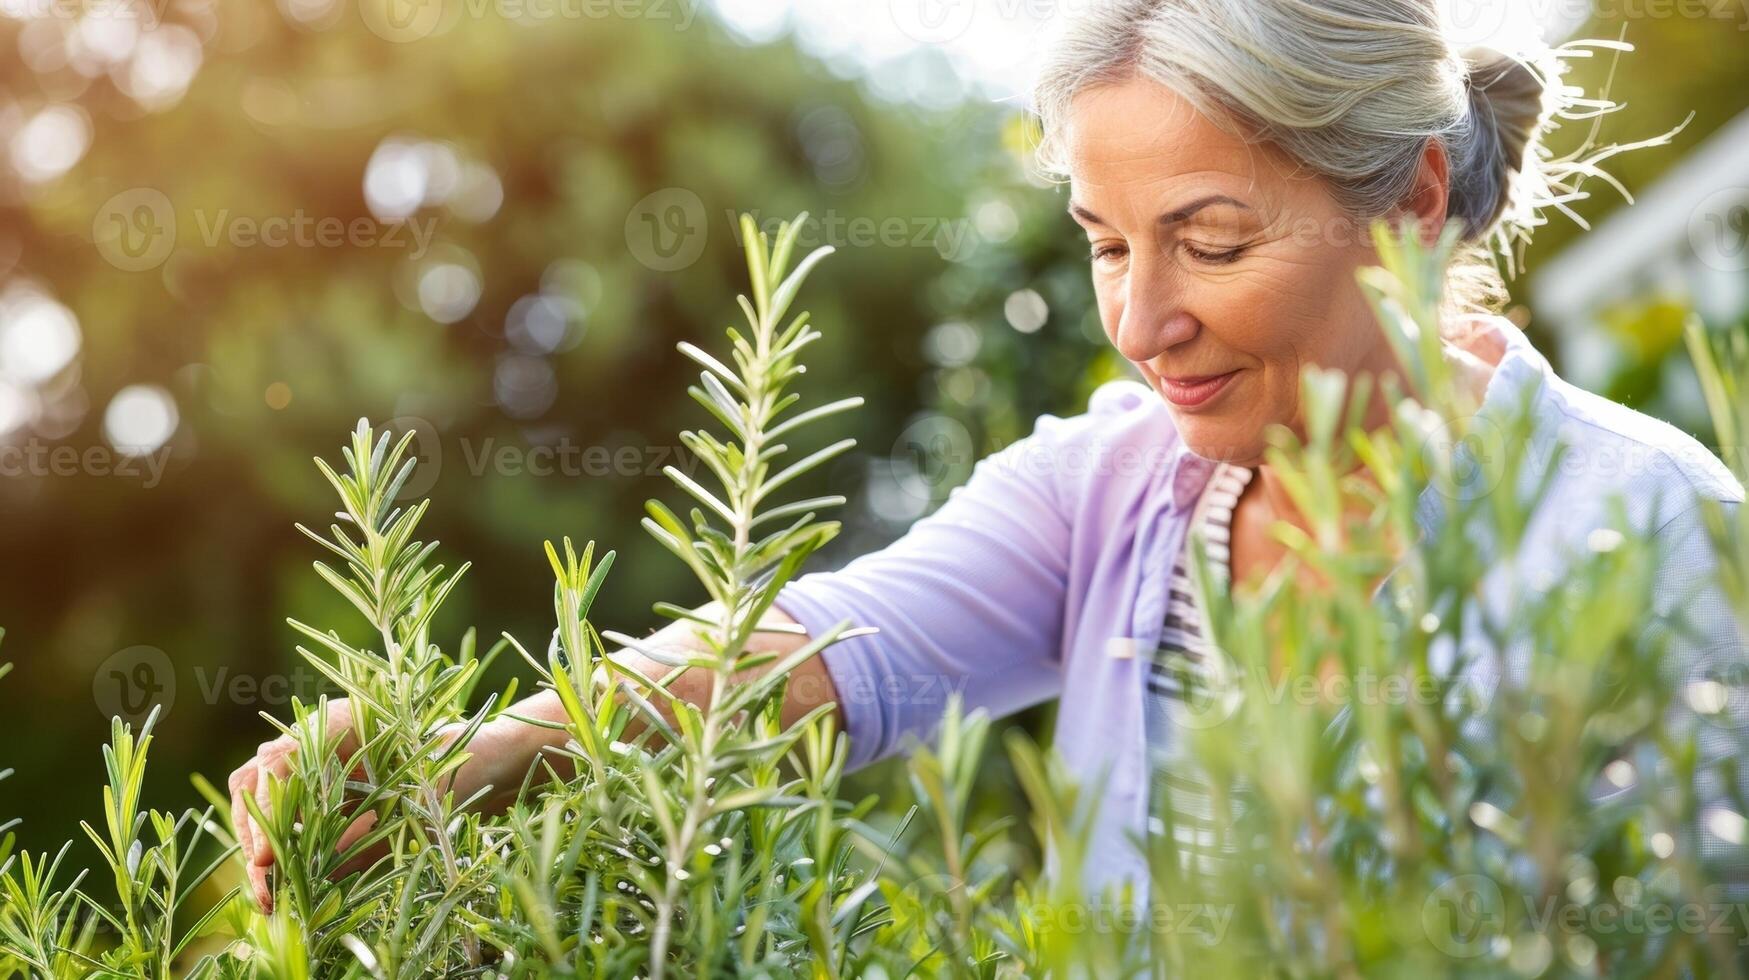 une femme soigneusement coupure Frais Romarin de une broussailleux plante dans sa arrière-cour jardin photo